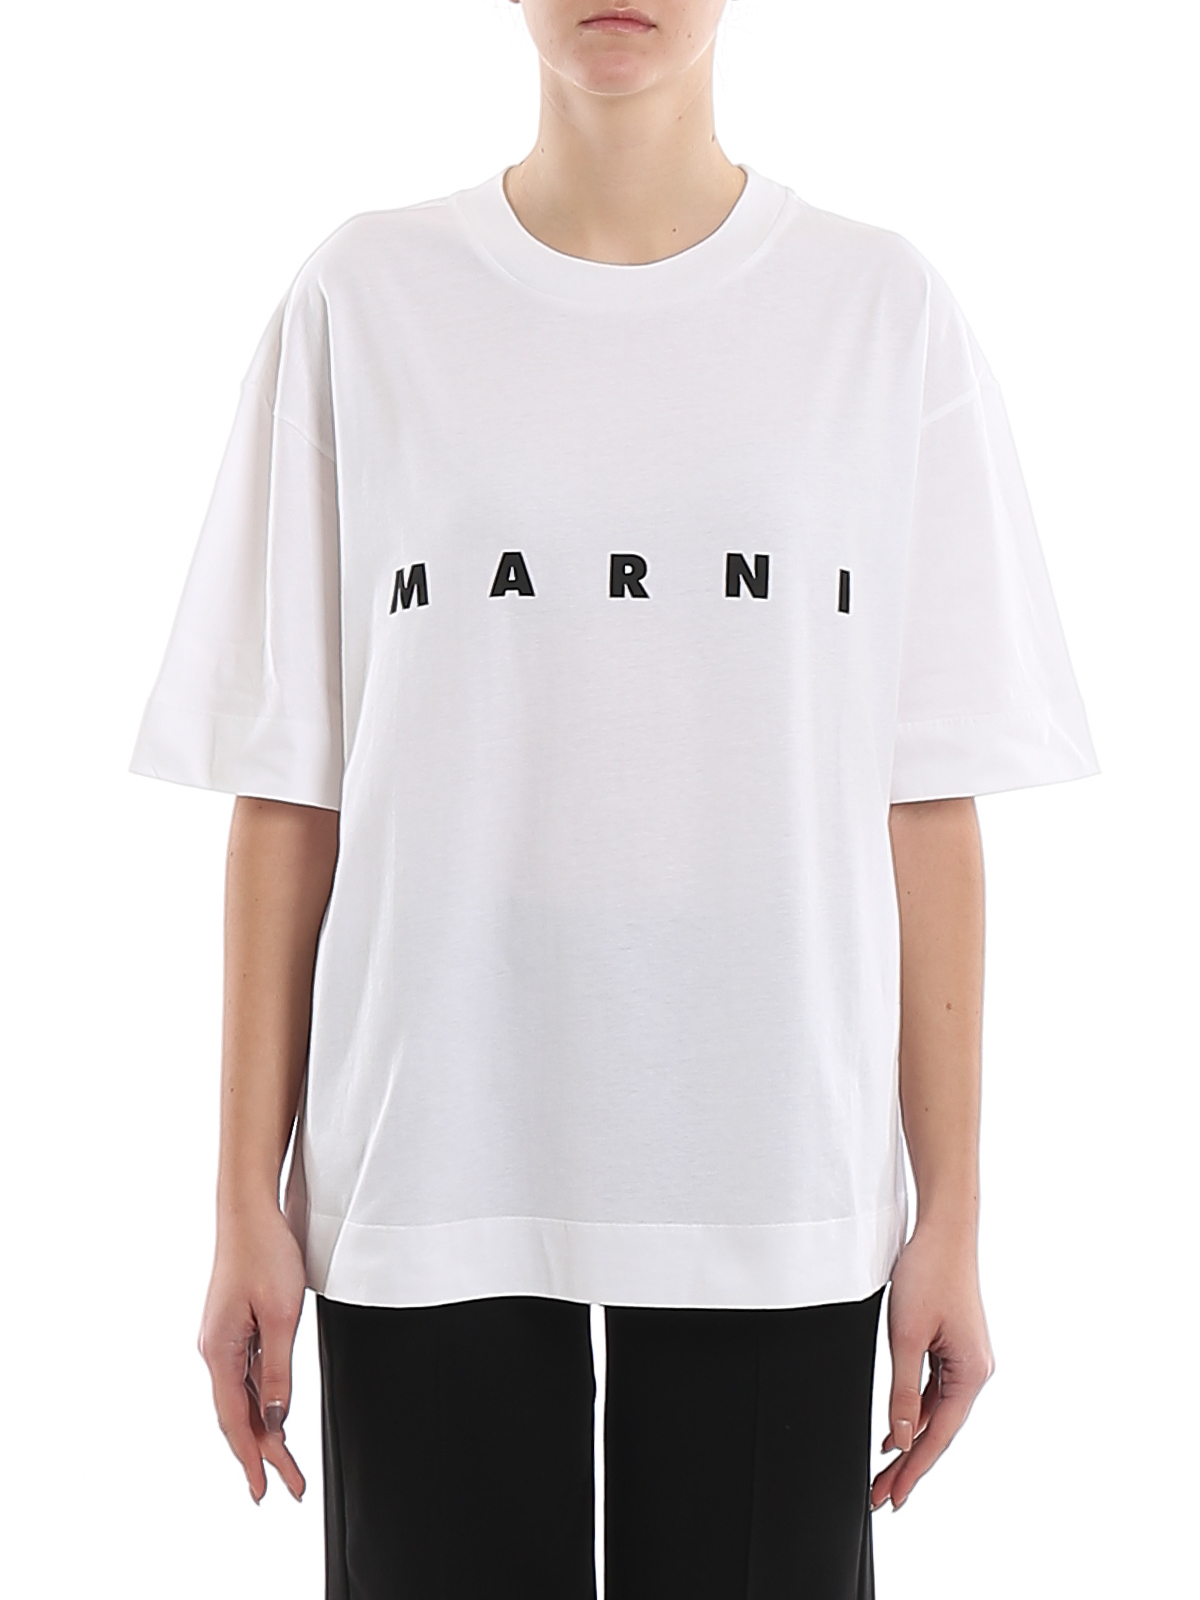 Tシャツ Marni - Tシャツ - 白 - THJET49EPBSCP89LOW01 | iKRIX.com